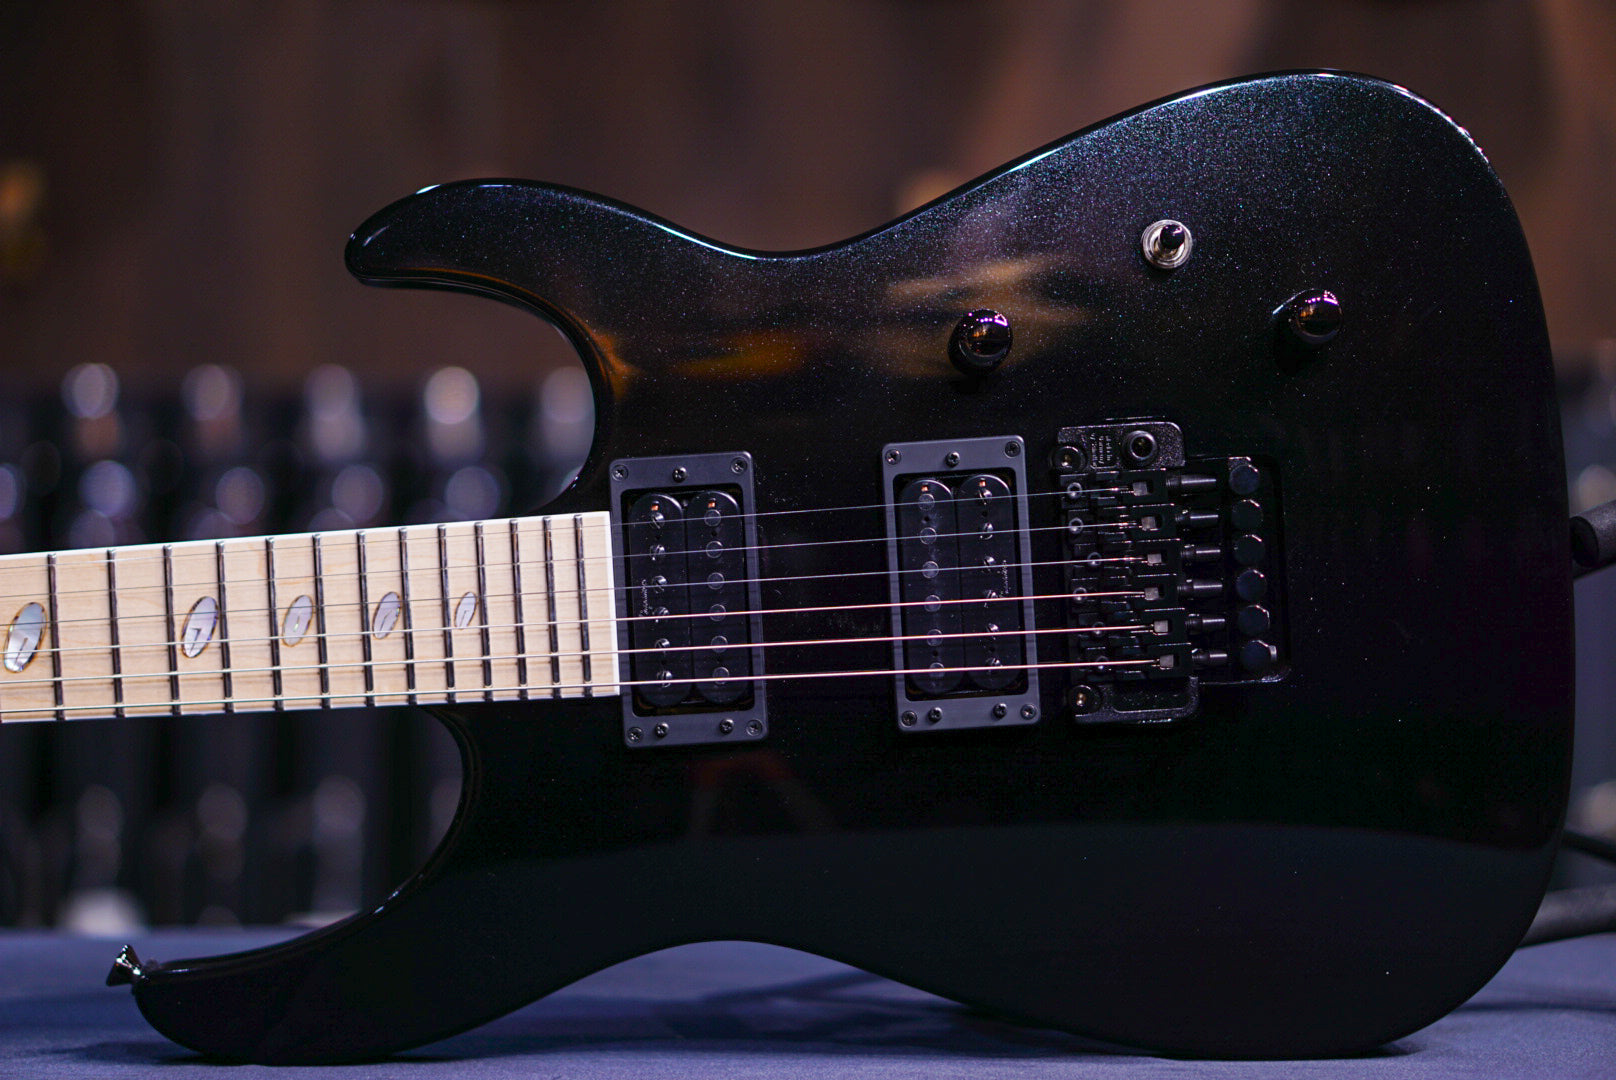 Caparison Dellinger II Prominence MF Trans spectrum black 3350144 - HIENDGUITAR   Caparison Guitars